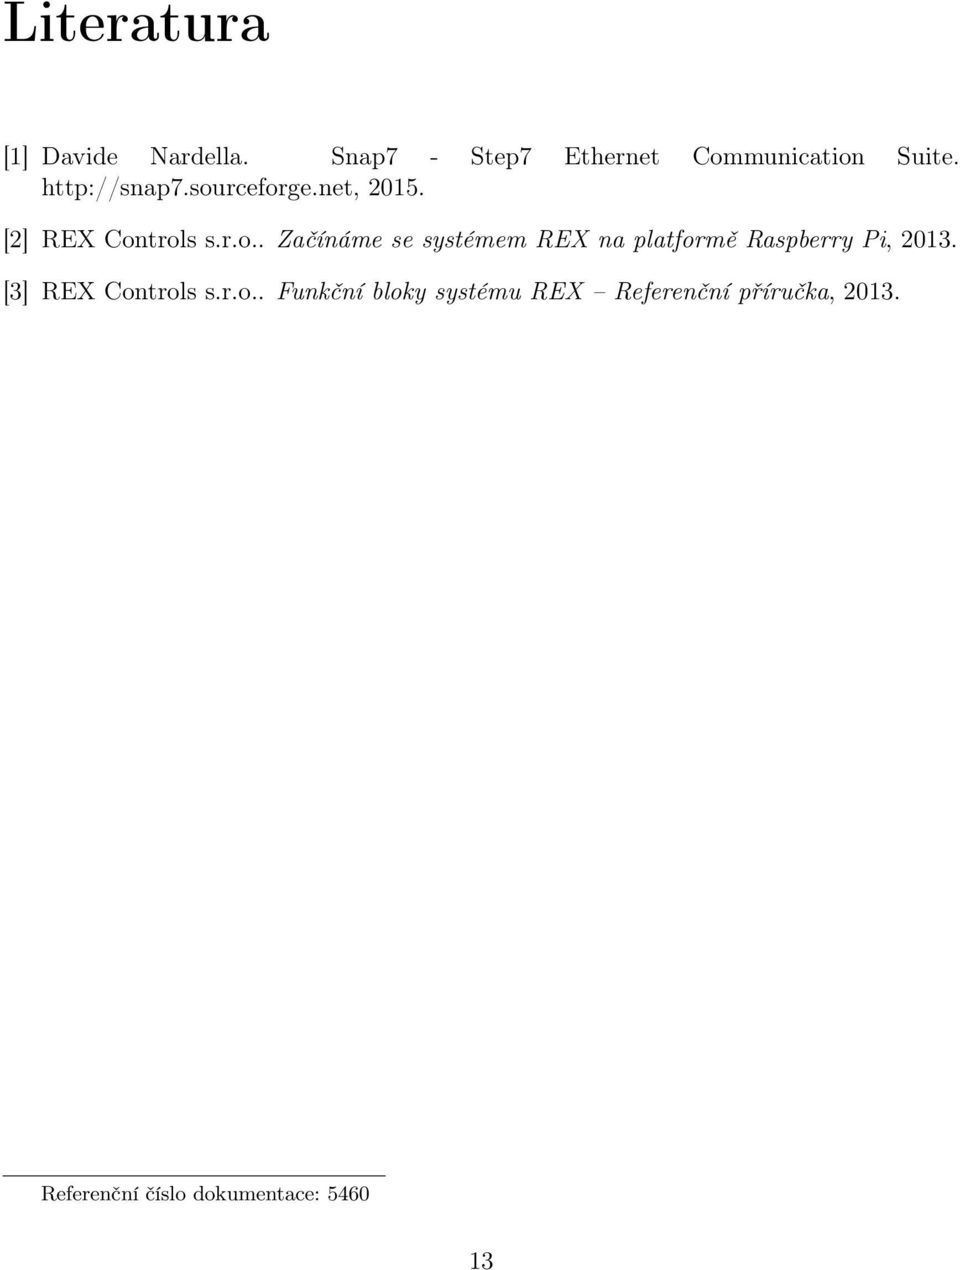 [3] REX Controls s.r.o.. Funkční bloky systému REX Referenční příručka, 2013.